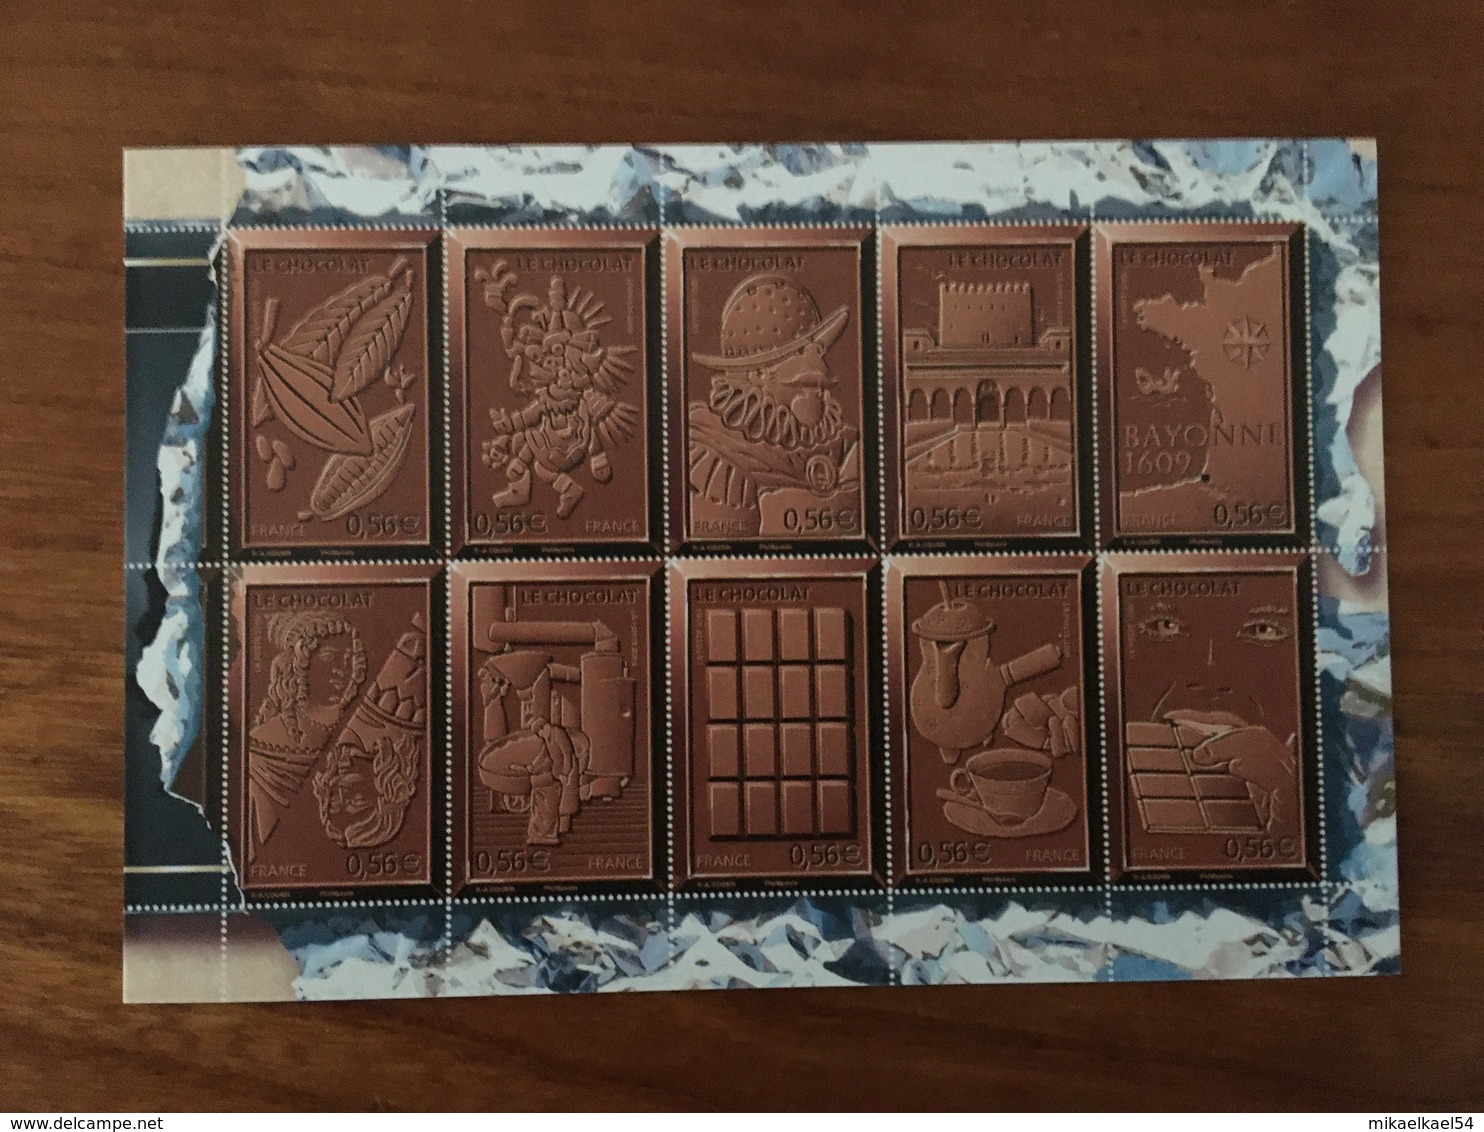 CARTE POSTALE Le Chocolat Avec Vignette En Grisé NON RECOUVERTE DE LA MENTION "Affranchir Ici" - Neuve ** - Official Stationery